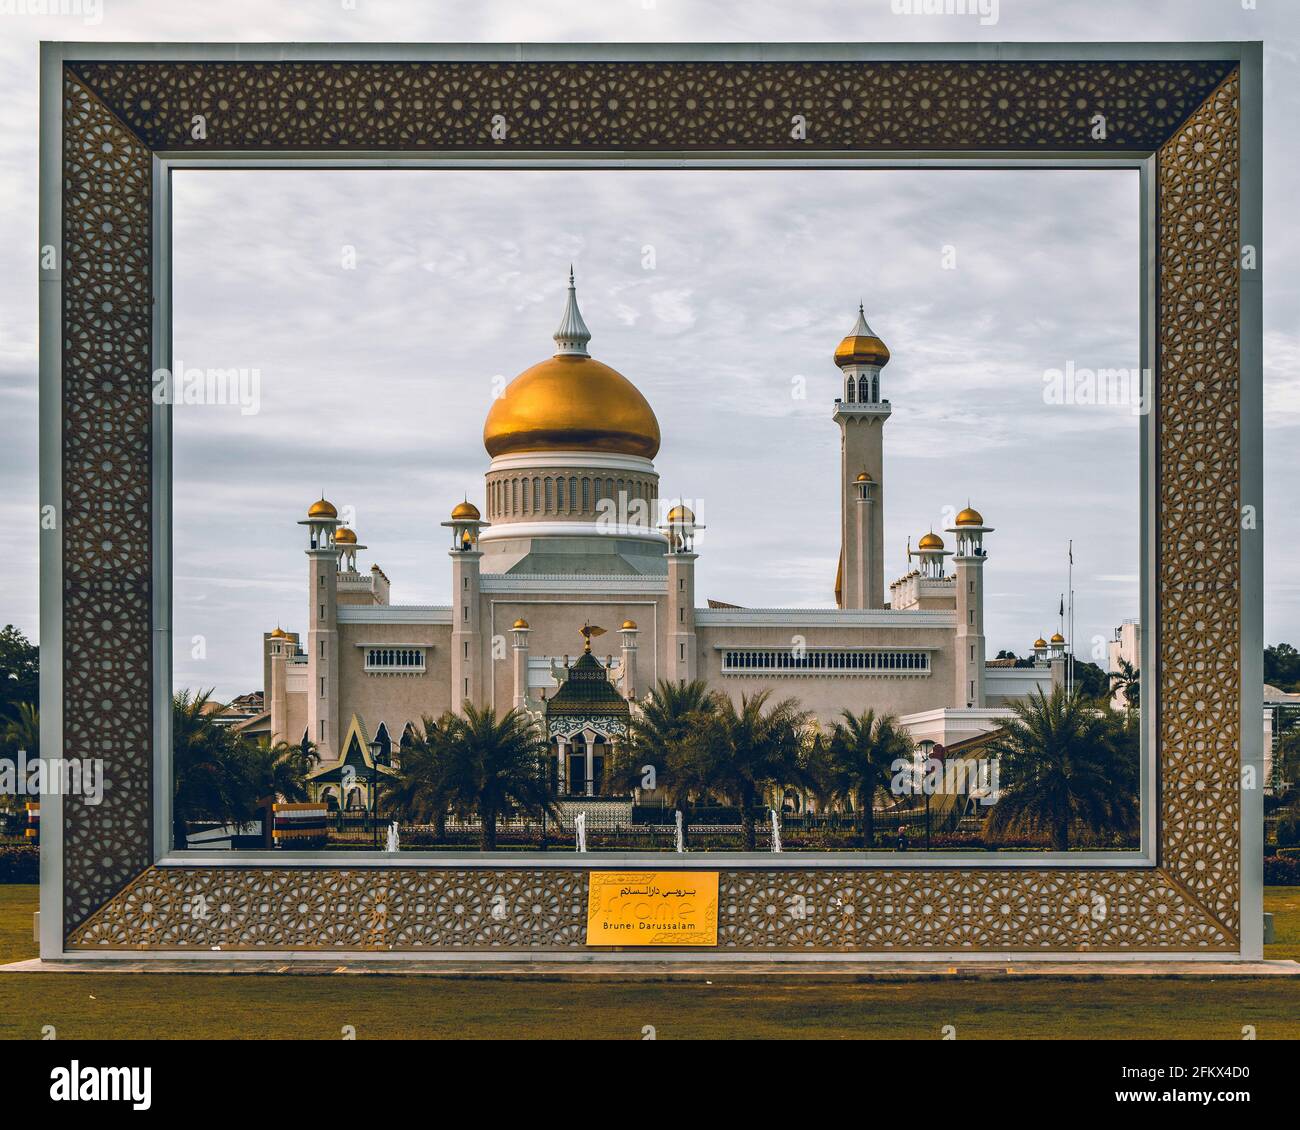 Immagine della moschea Omar Ali Saifuddien presa attraverso la 'cornice' in Brunei Darussalam Foto Stock